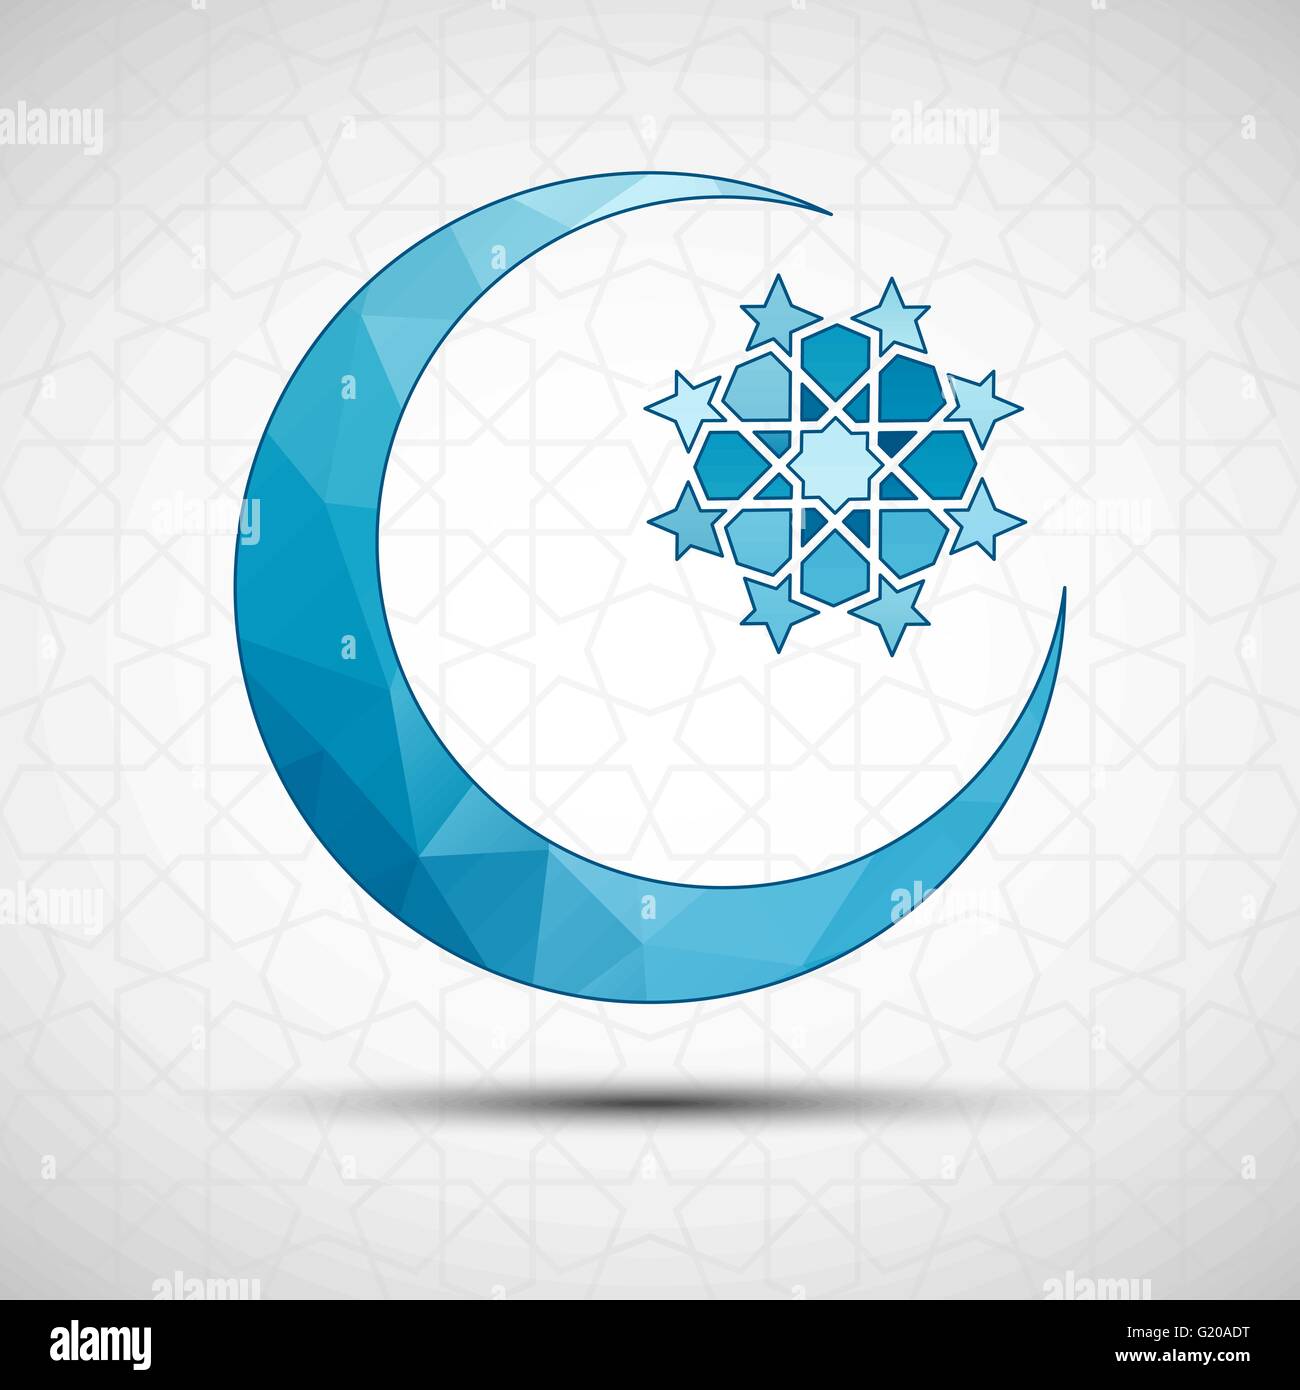 Illustrazione Vettoriale di Eid Mubarak greeting card design Islamico con sfondo decorativo. Luna crescente e stella Illustrazione Vettoriale